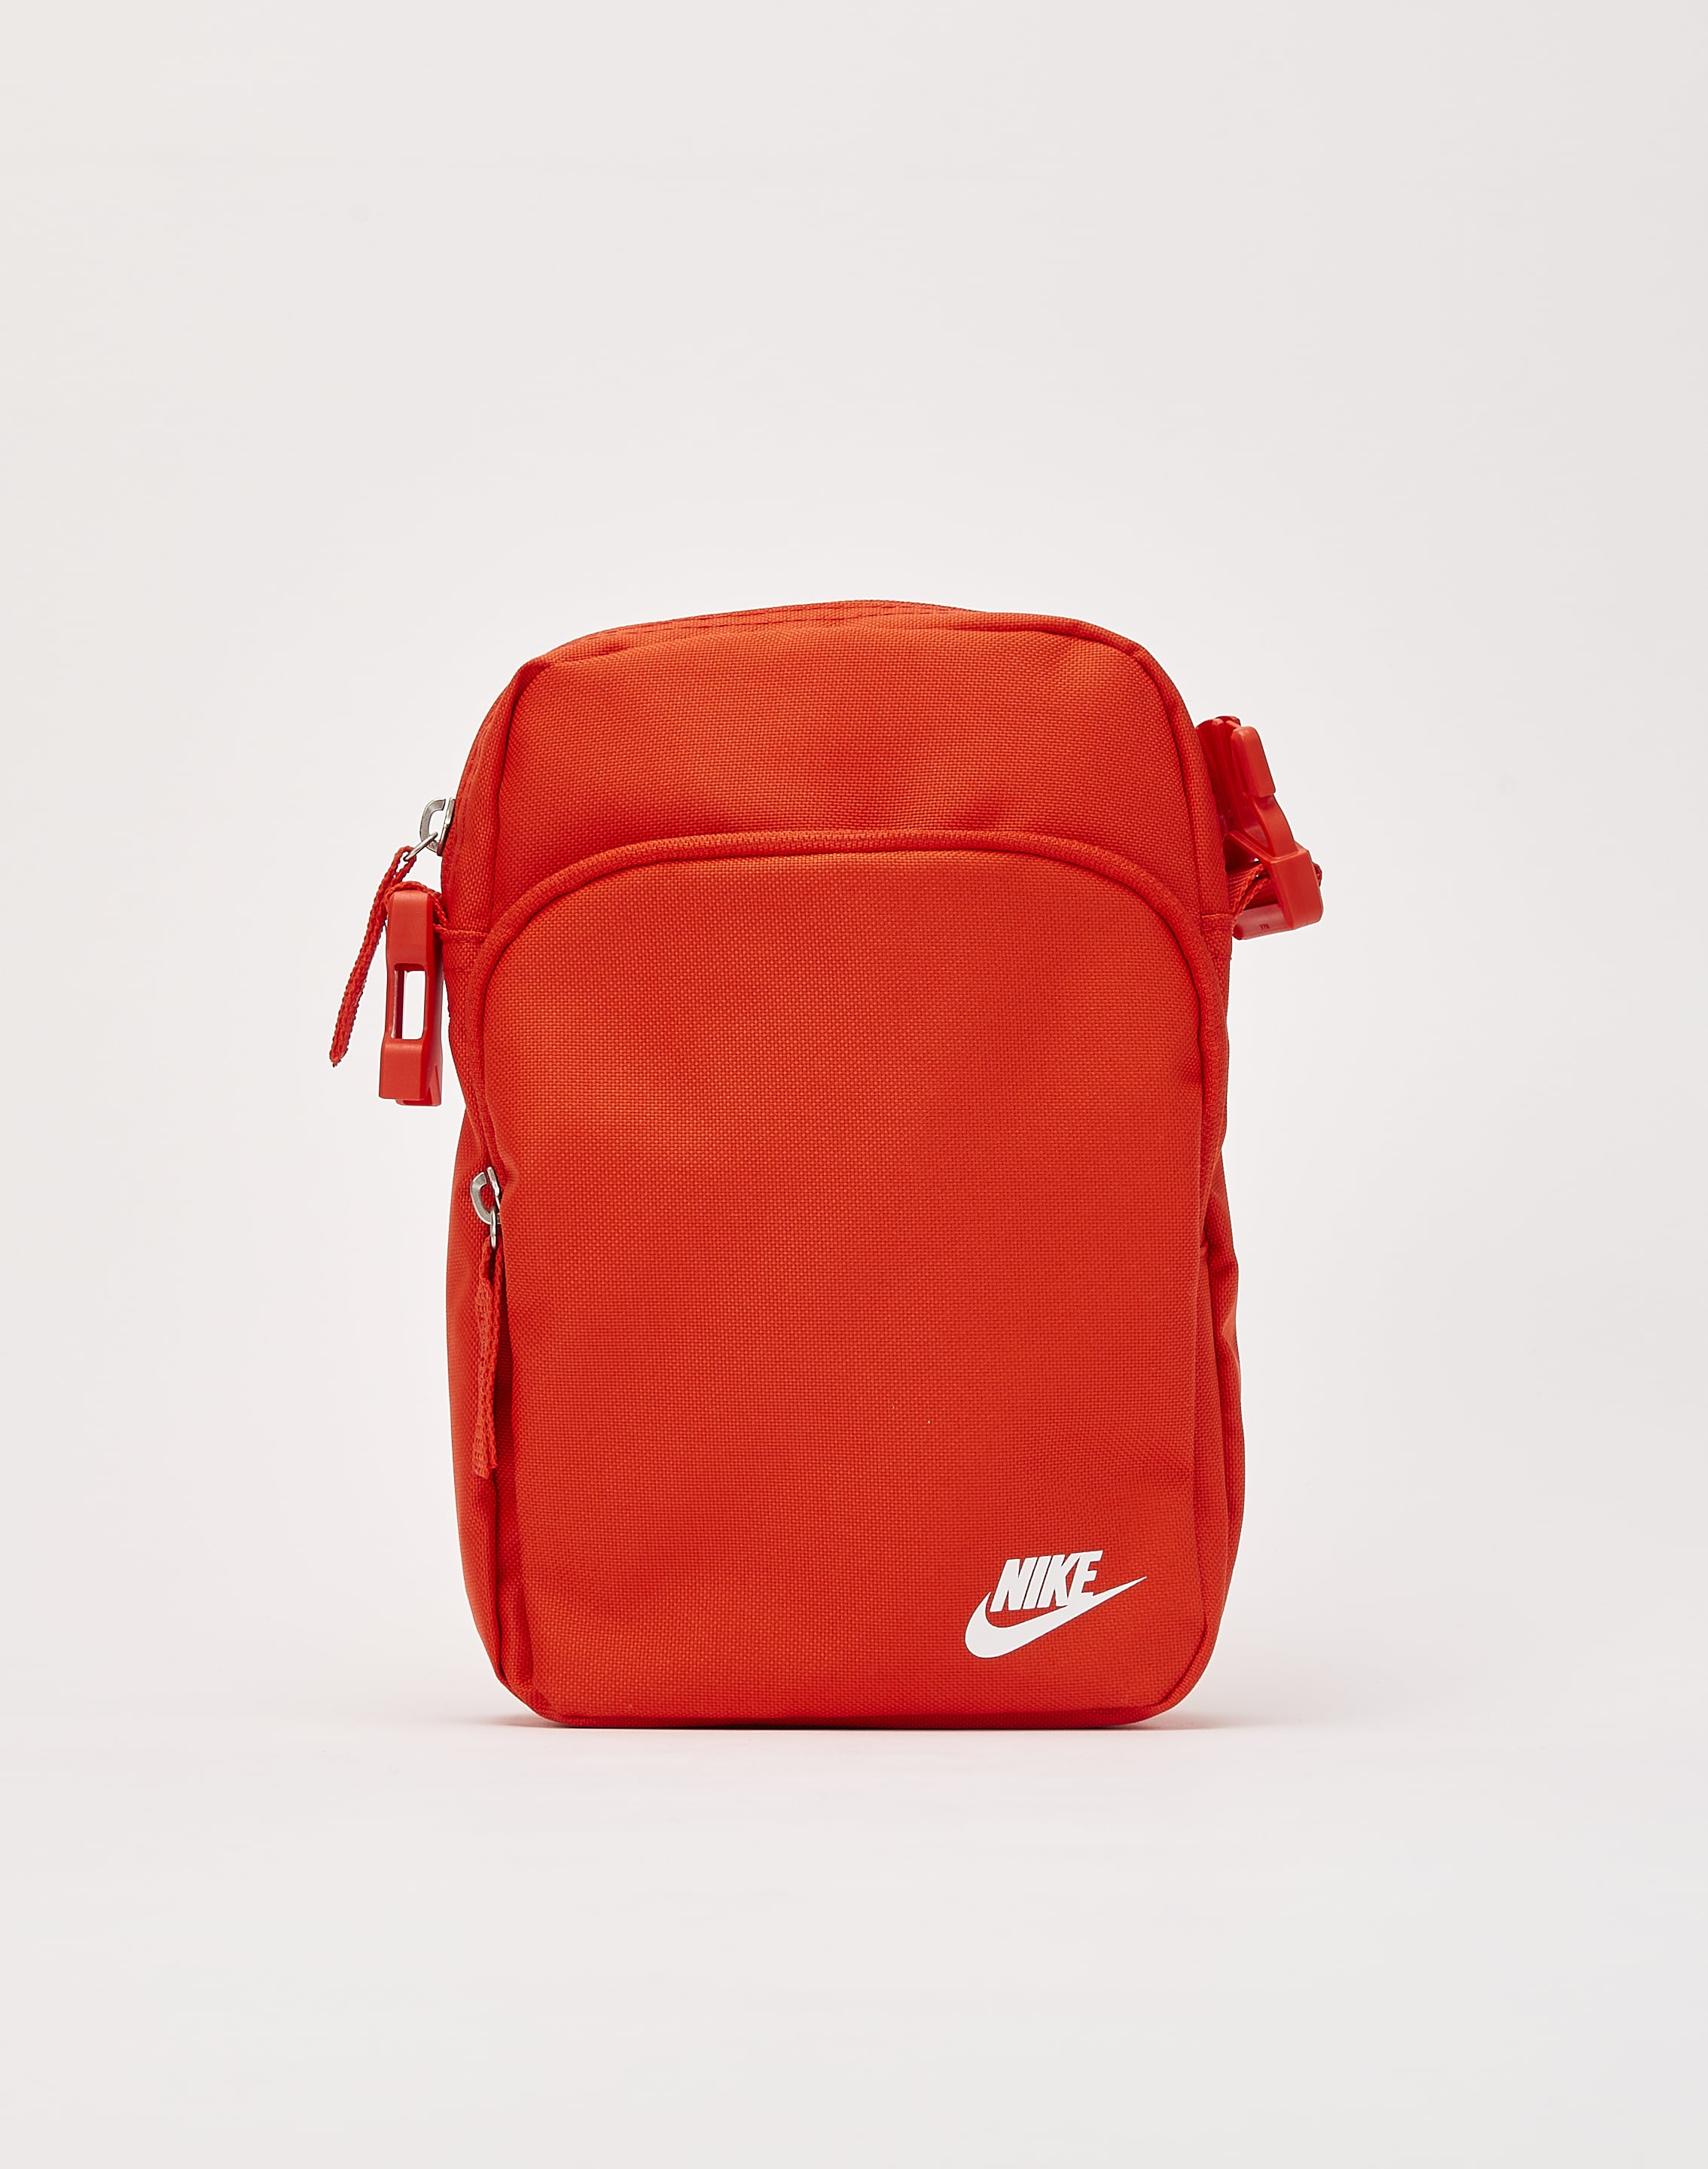 Nike Burgundy Cross Body Bag – Holsales